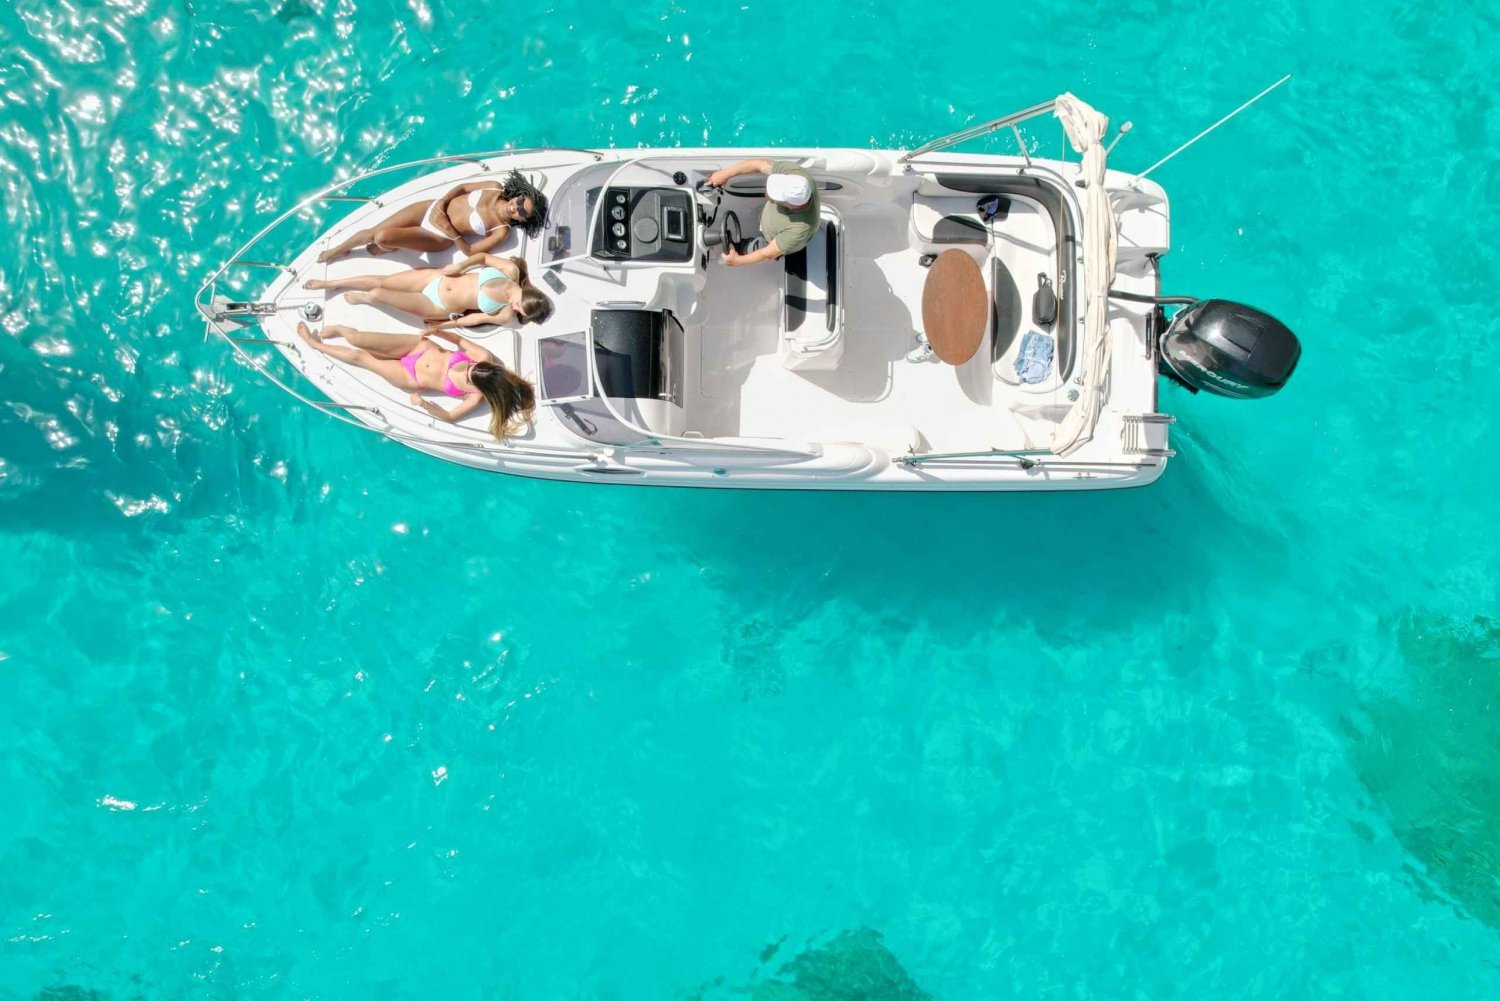 Sliema Private Boat Charter Comino, Blue Lagoon, Gozo